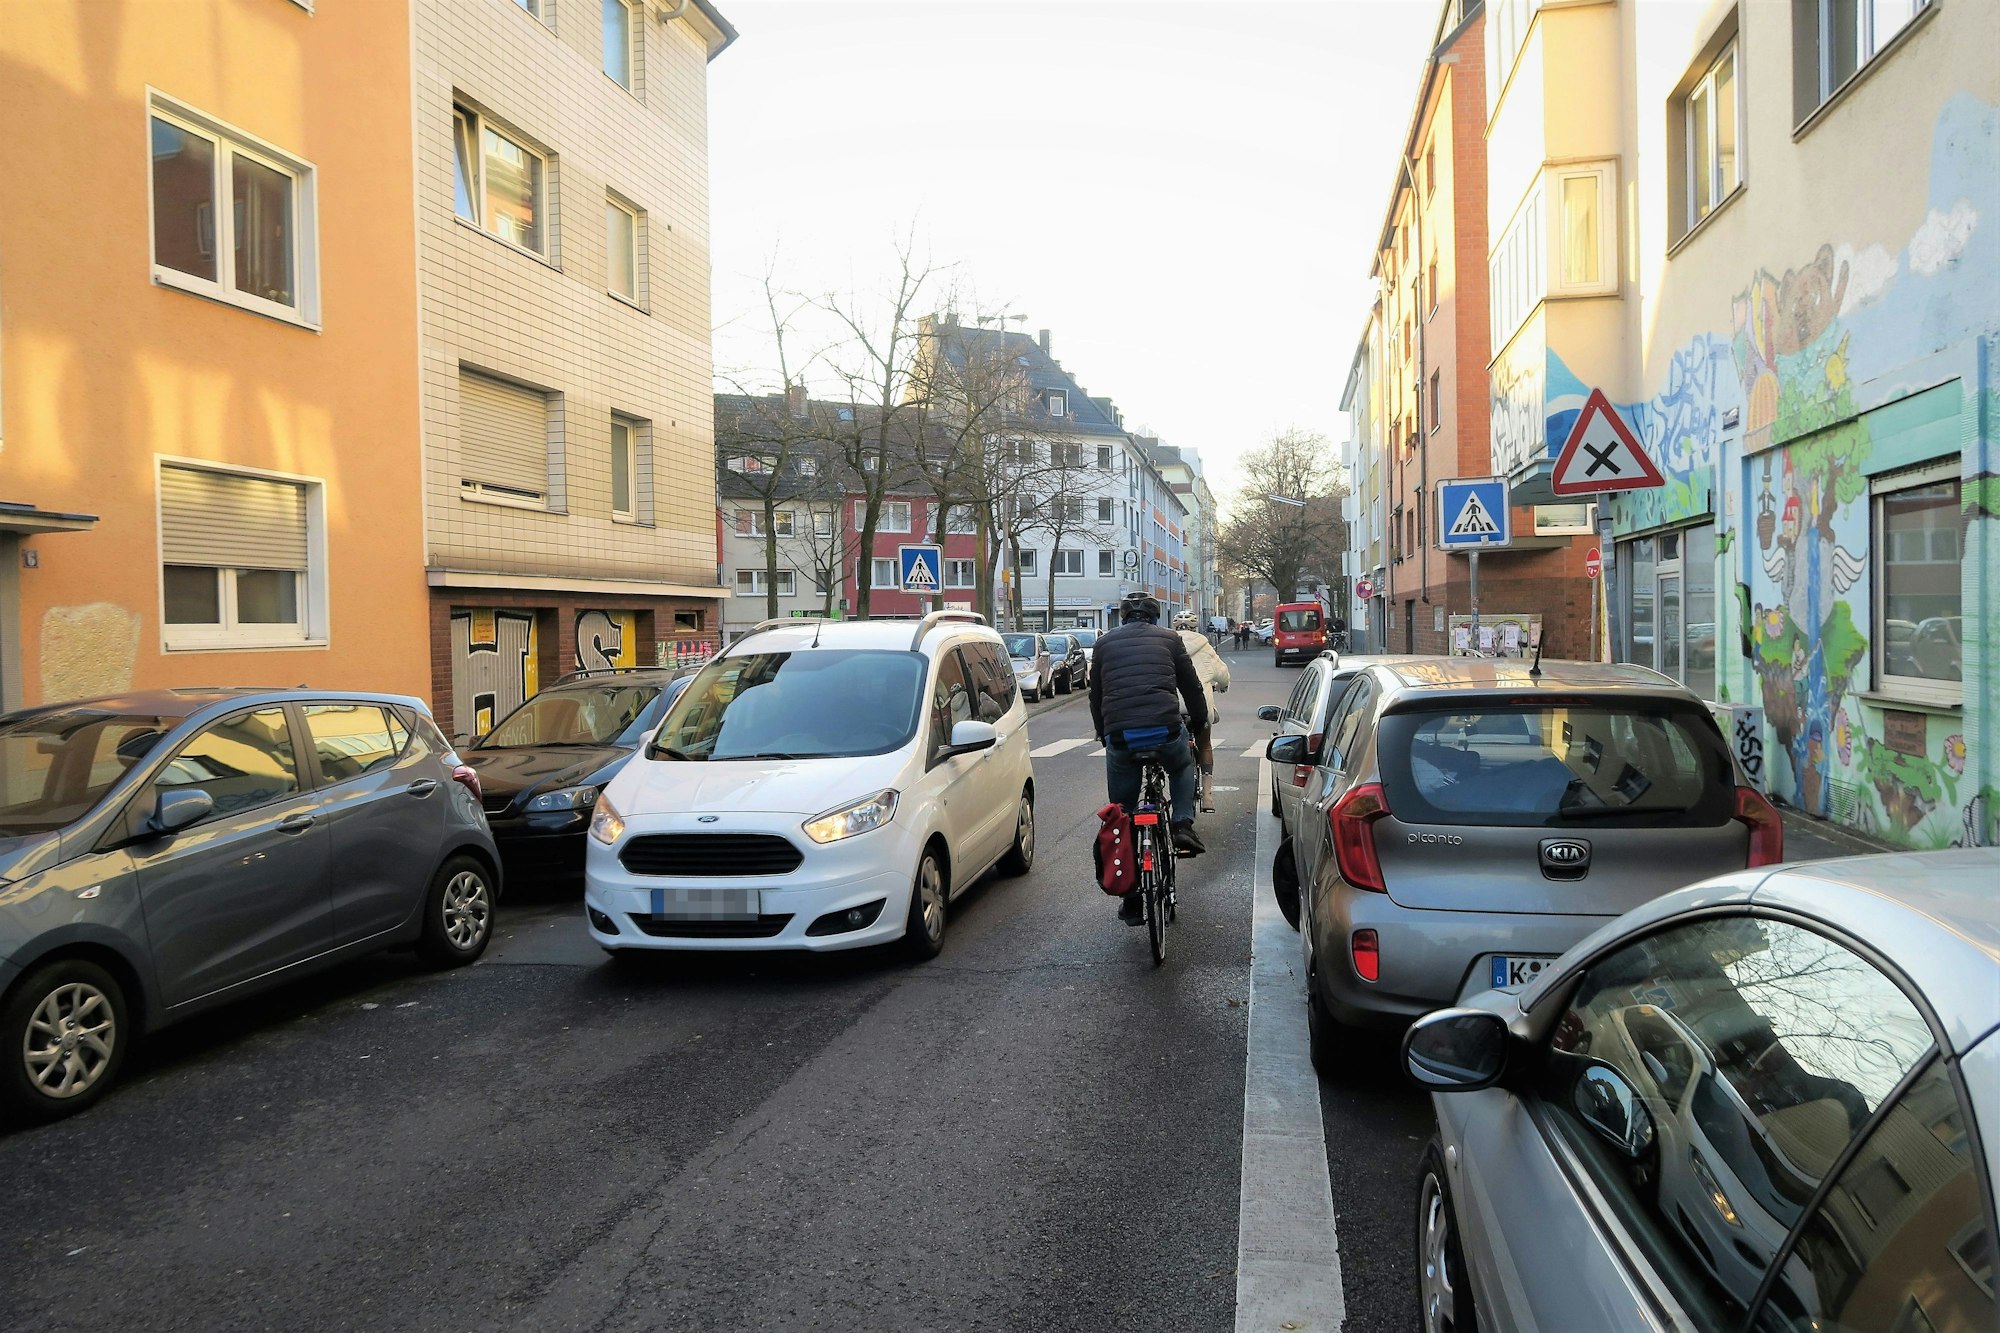 Zwei Fahrräder fahren auf einer Straße.